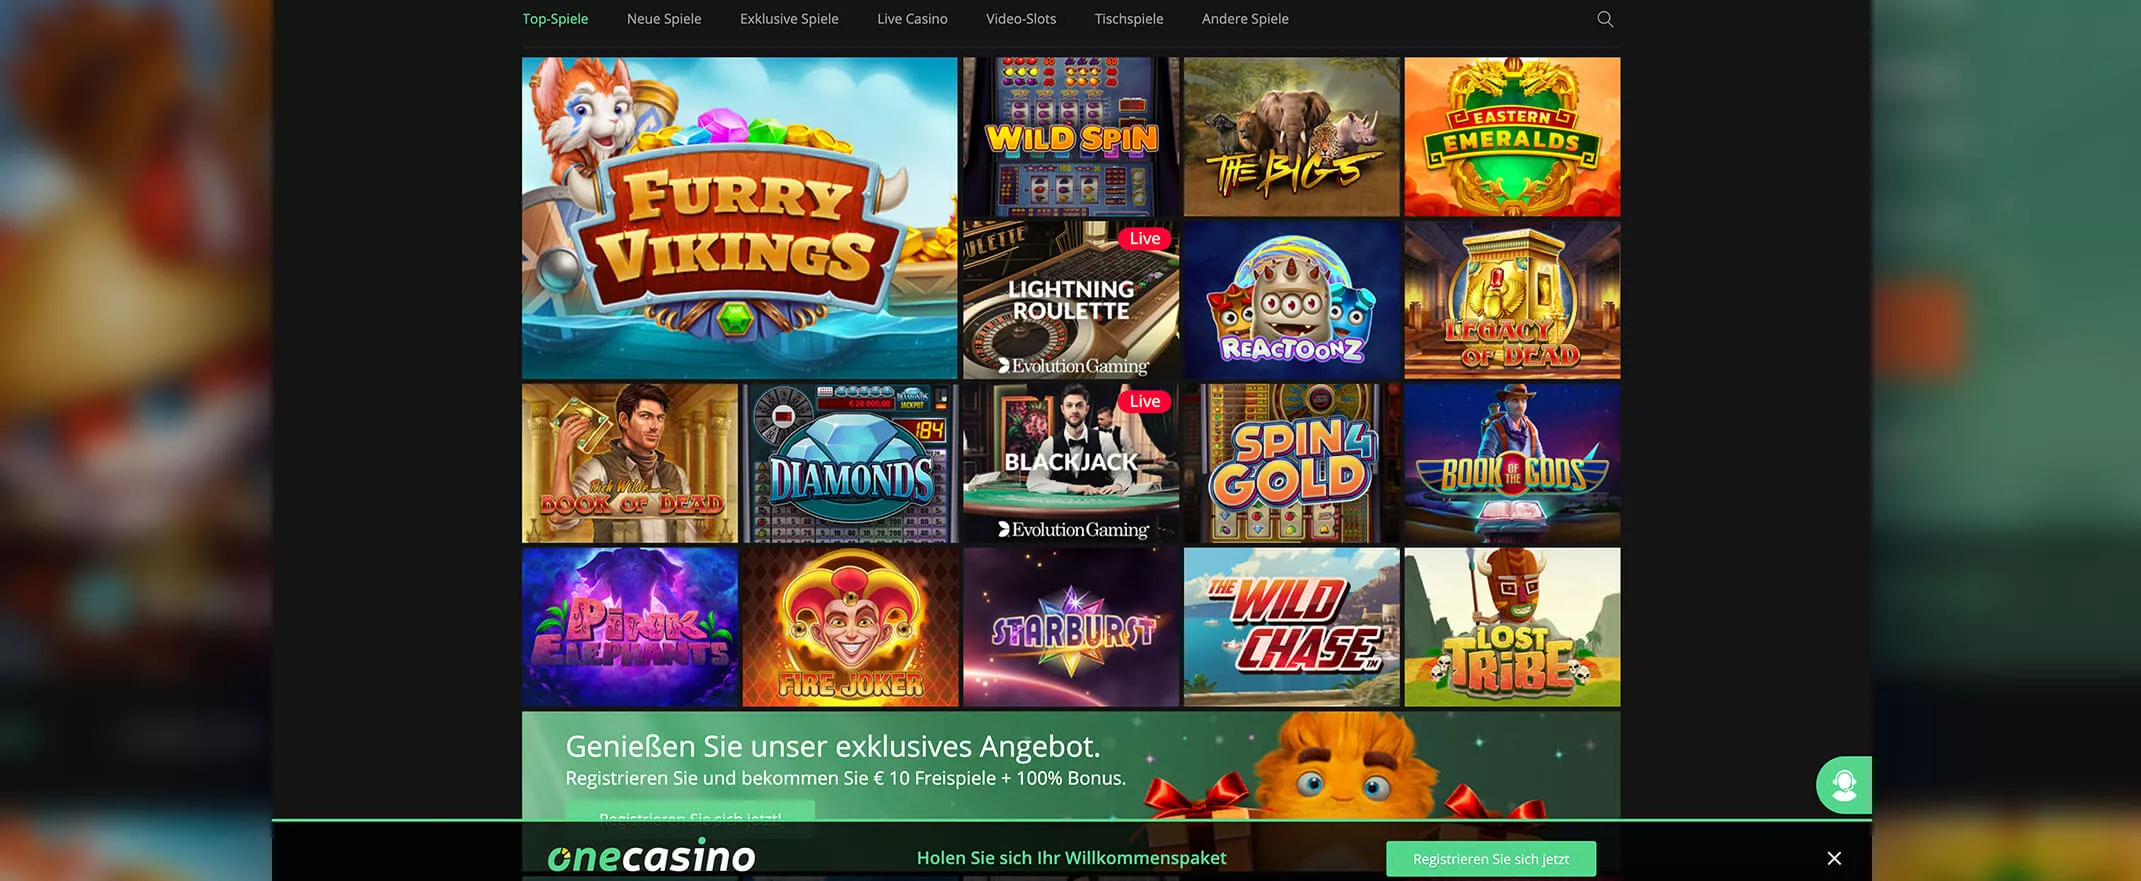 Spieleauswahl bei One Casino